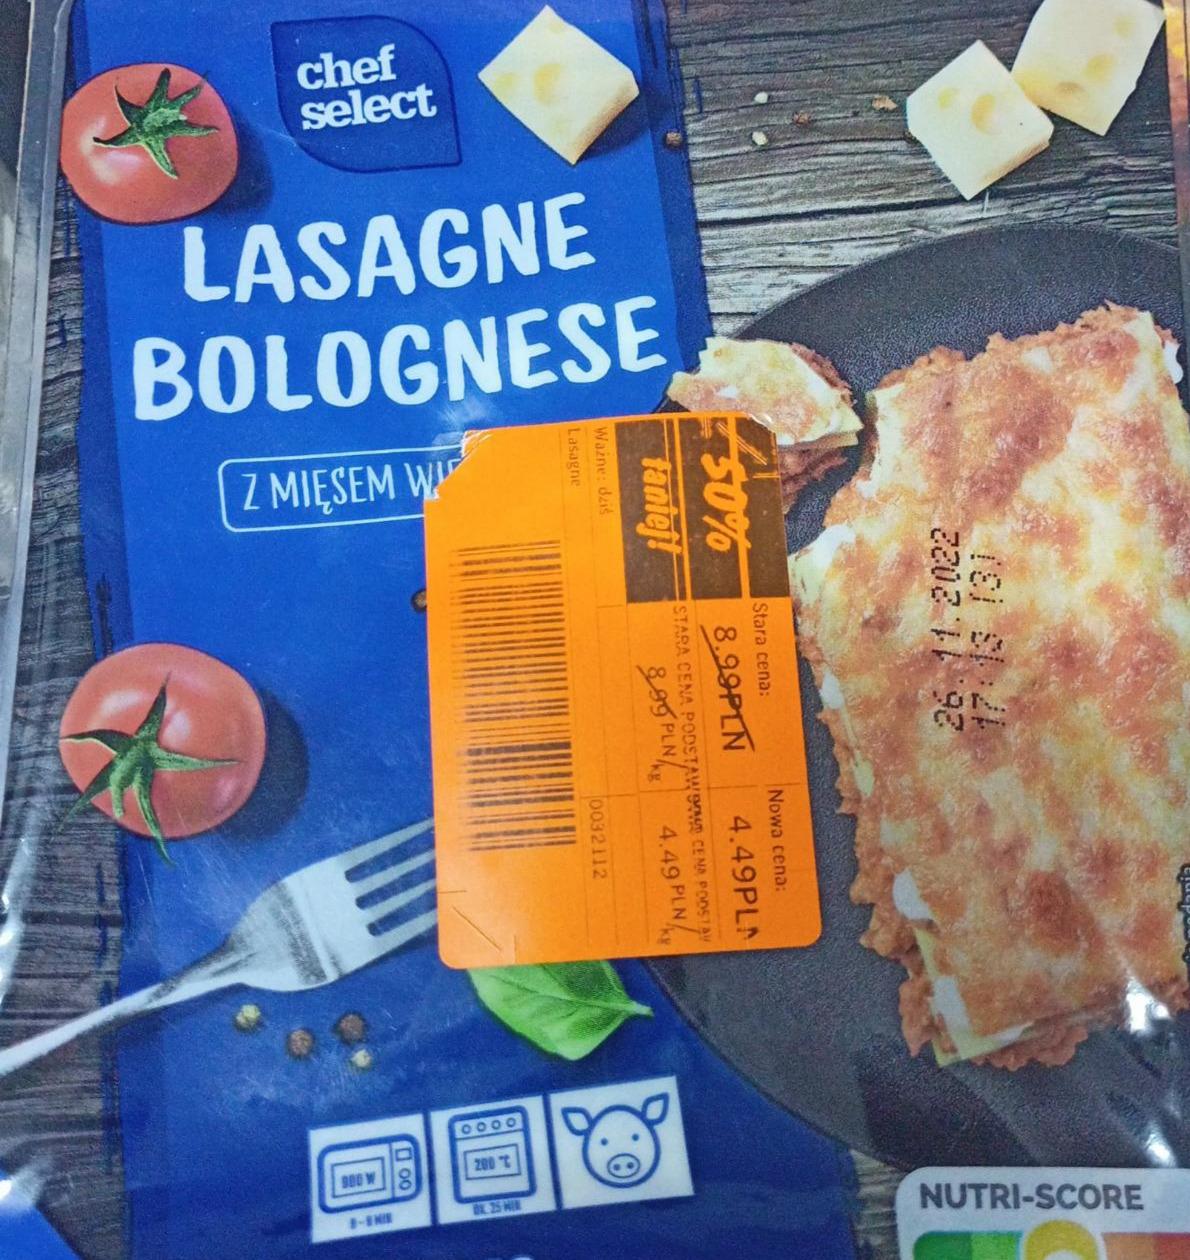 kJ Select mięsem - wieprzowym odżywcze i z bolognese kalorie, Chef Lasagne wartości